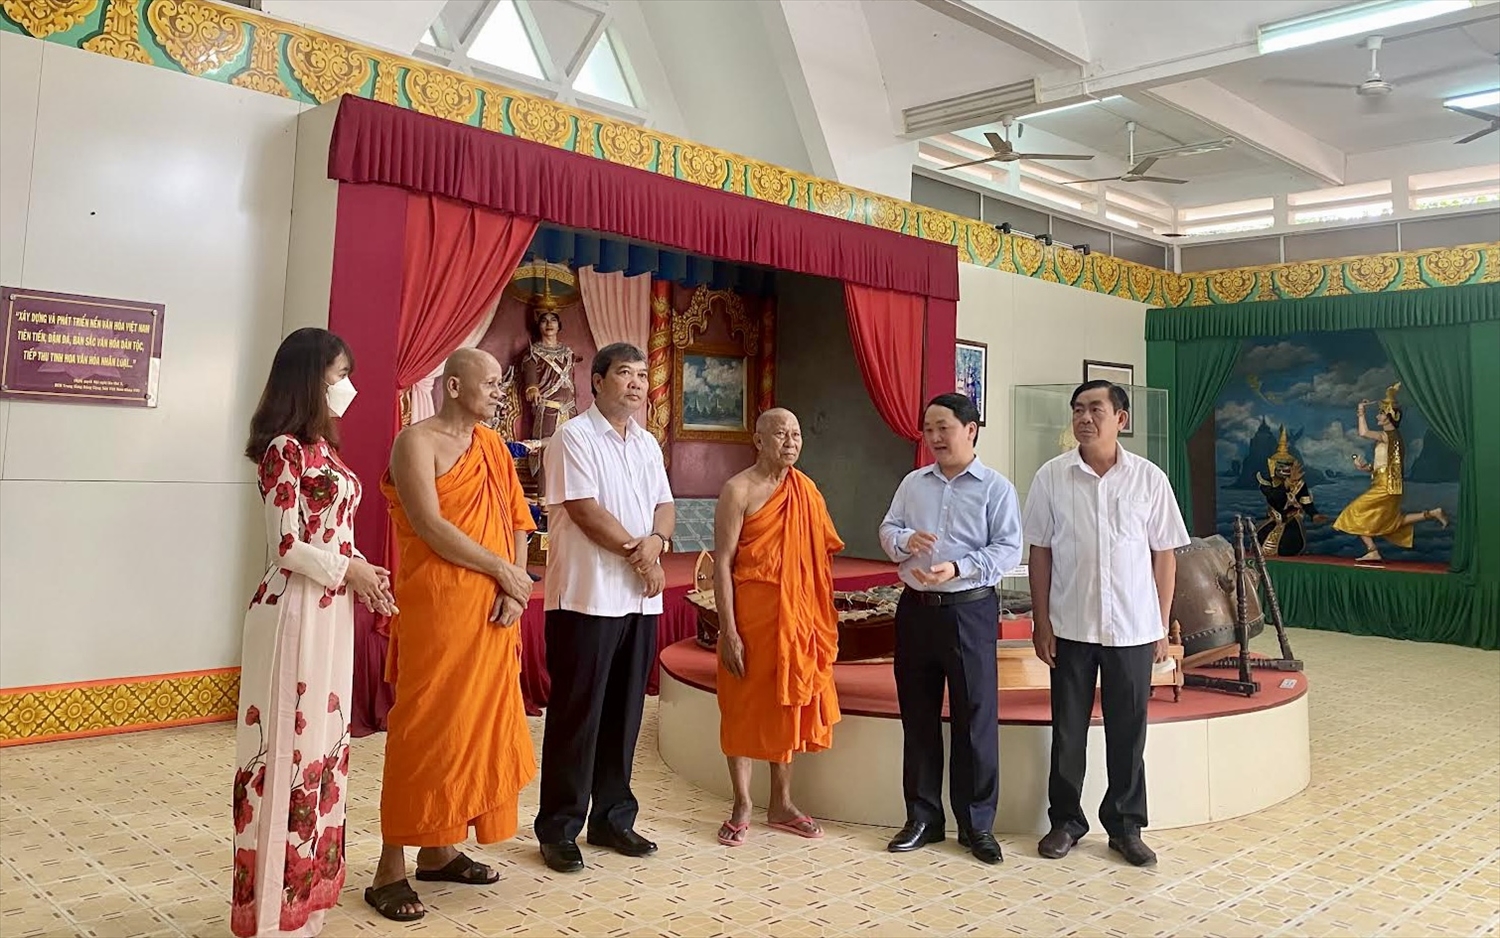 Bộ trưởng, Chủ nhiệm Hầu A Lềnh mong muốn lãnh đạo tỉnh Trà Vinh, Ban Quản lý Bảo tàng Văn hóa dân tộc Khmer tiếp tục quan tâm đến công tác sưu tầm, lưu giữ, góp phần gìn giữ và phát huy bản sắc văn hóa dân tộc Khmer trong dòng chảy văn hóa các dân tộc Việt Nam